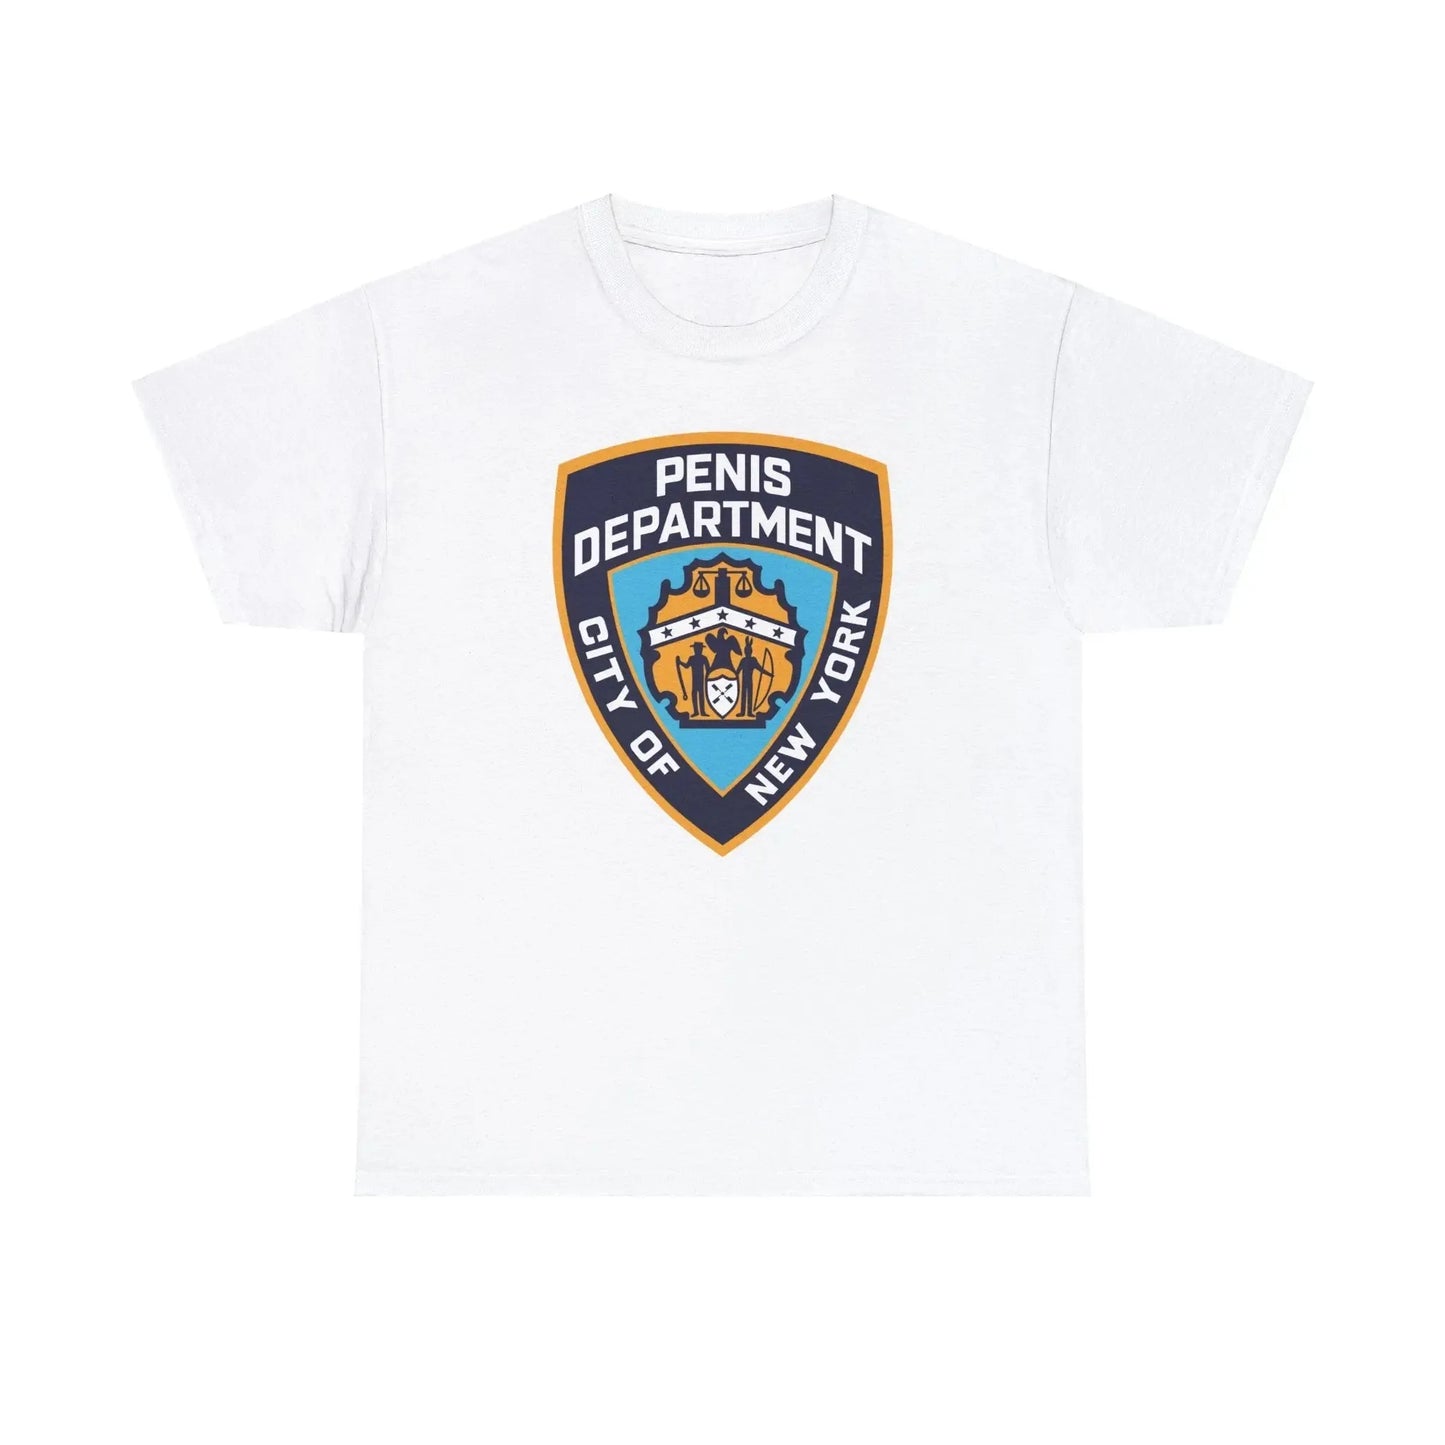 New York Pen15 Department T-Shirt - Failure International failureinternational.com store brand tiktok instagram